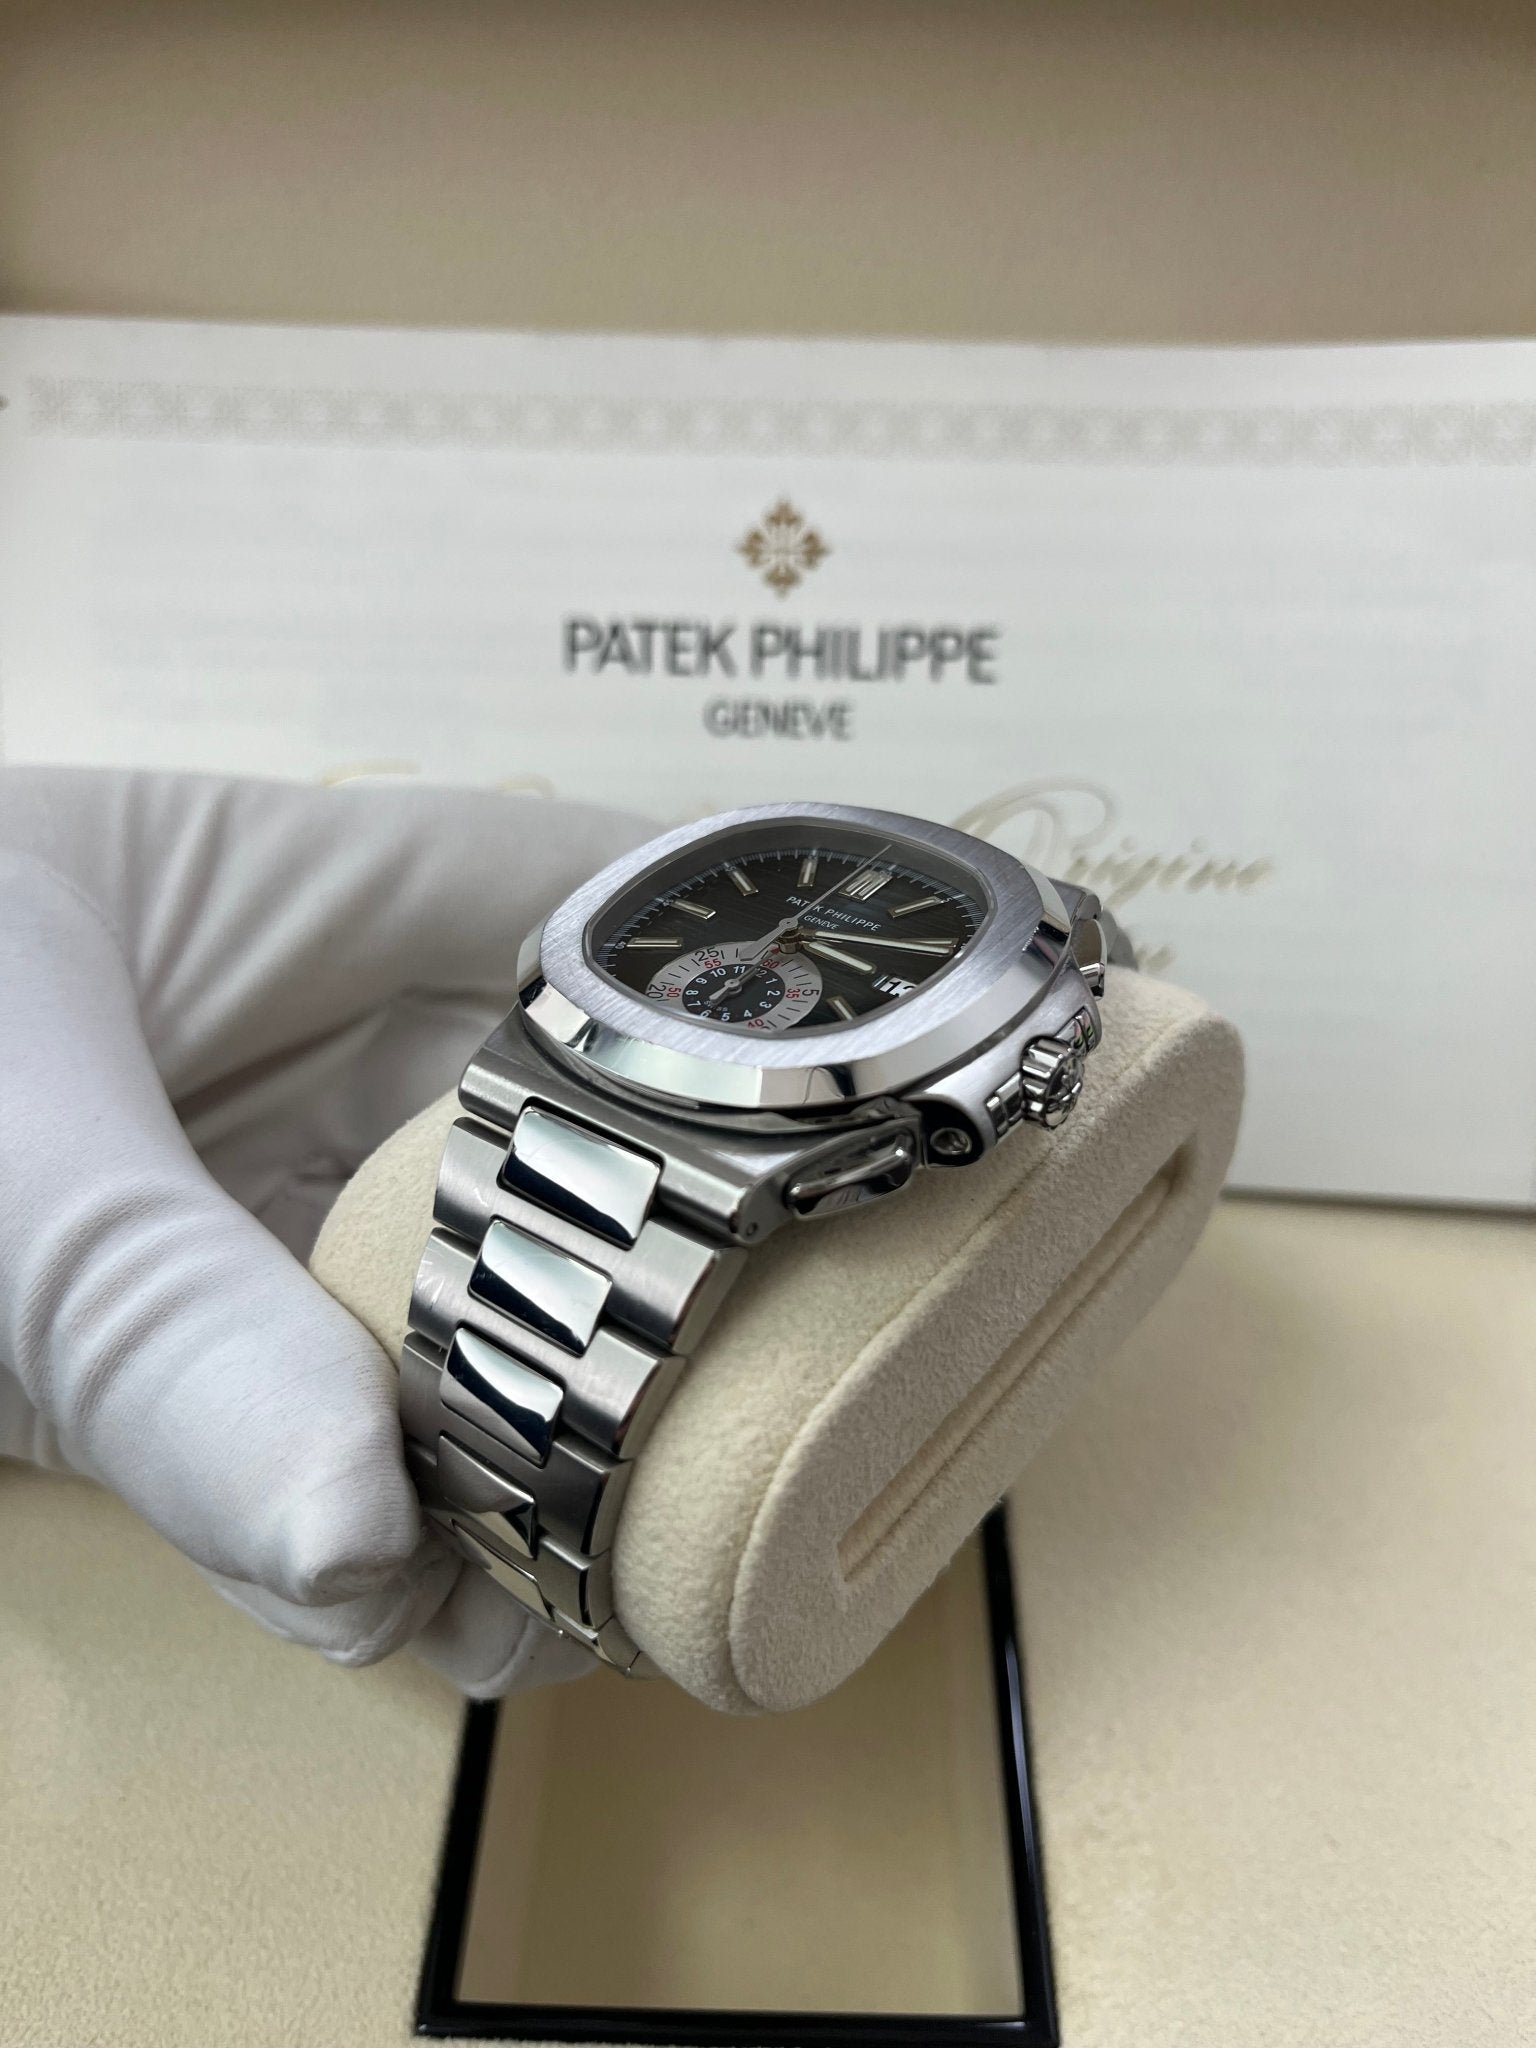 Patek Philippe Nautilus Chronograph REF 5980/1A-001